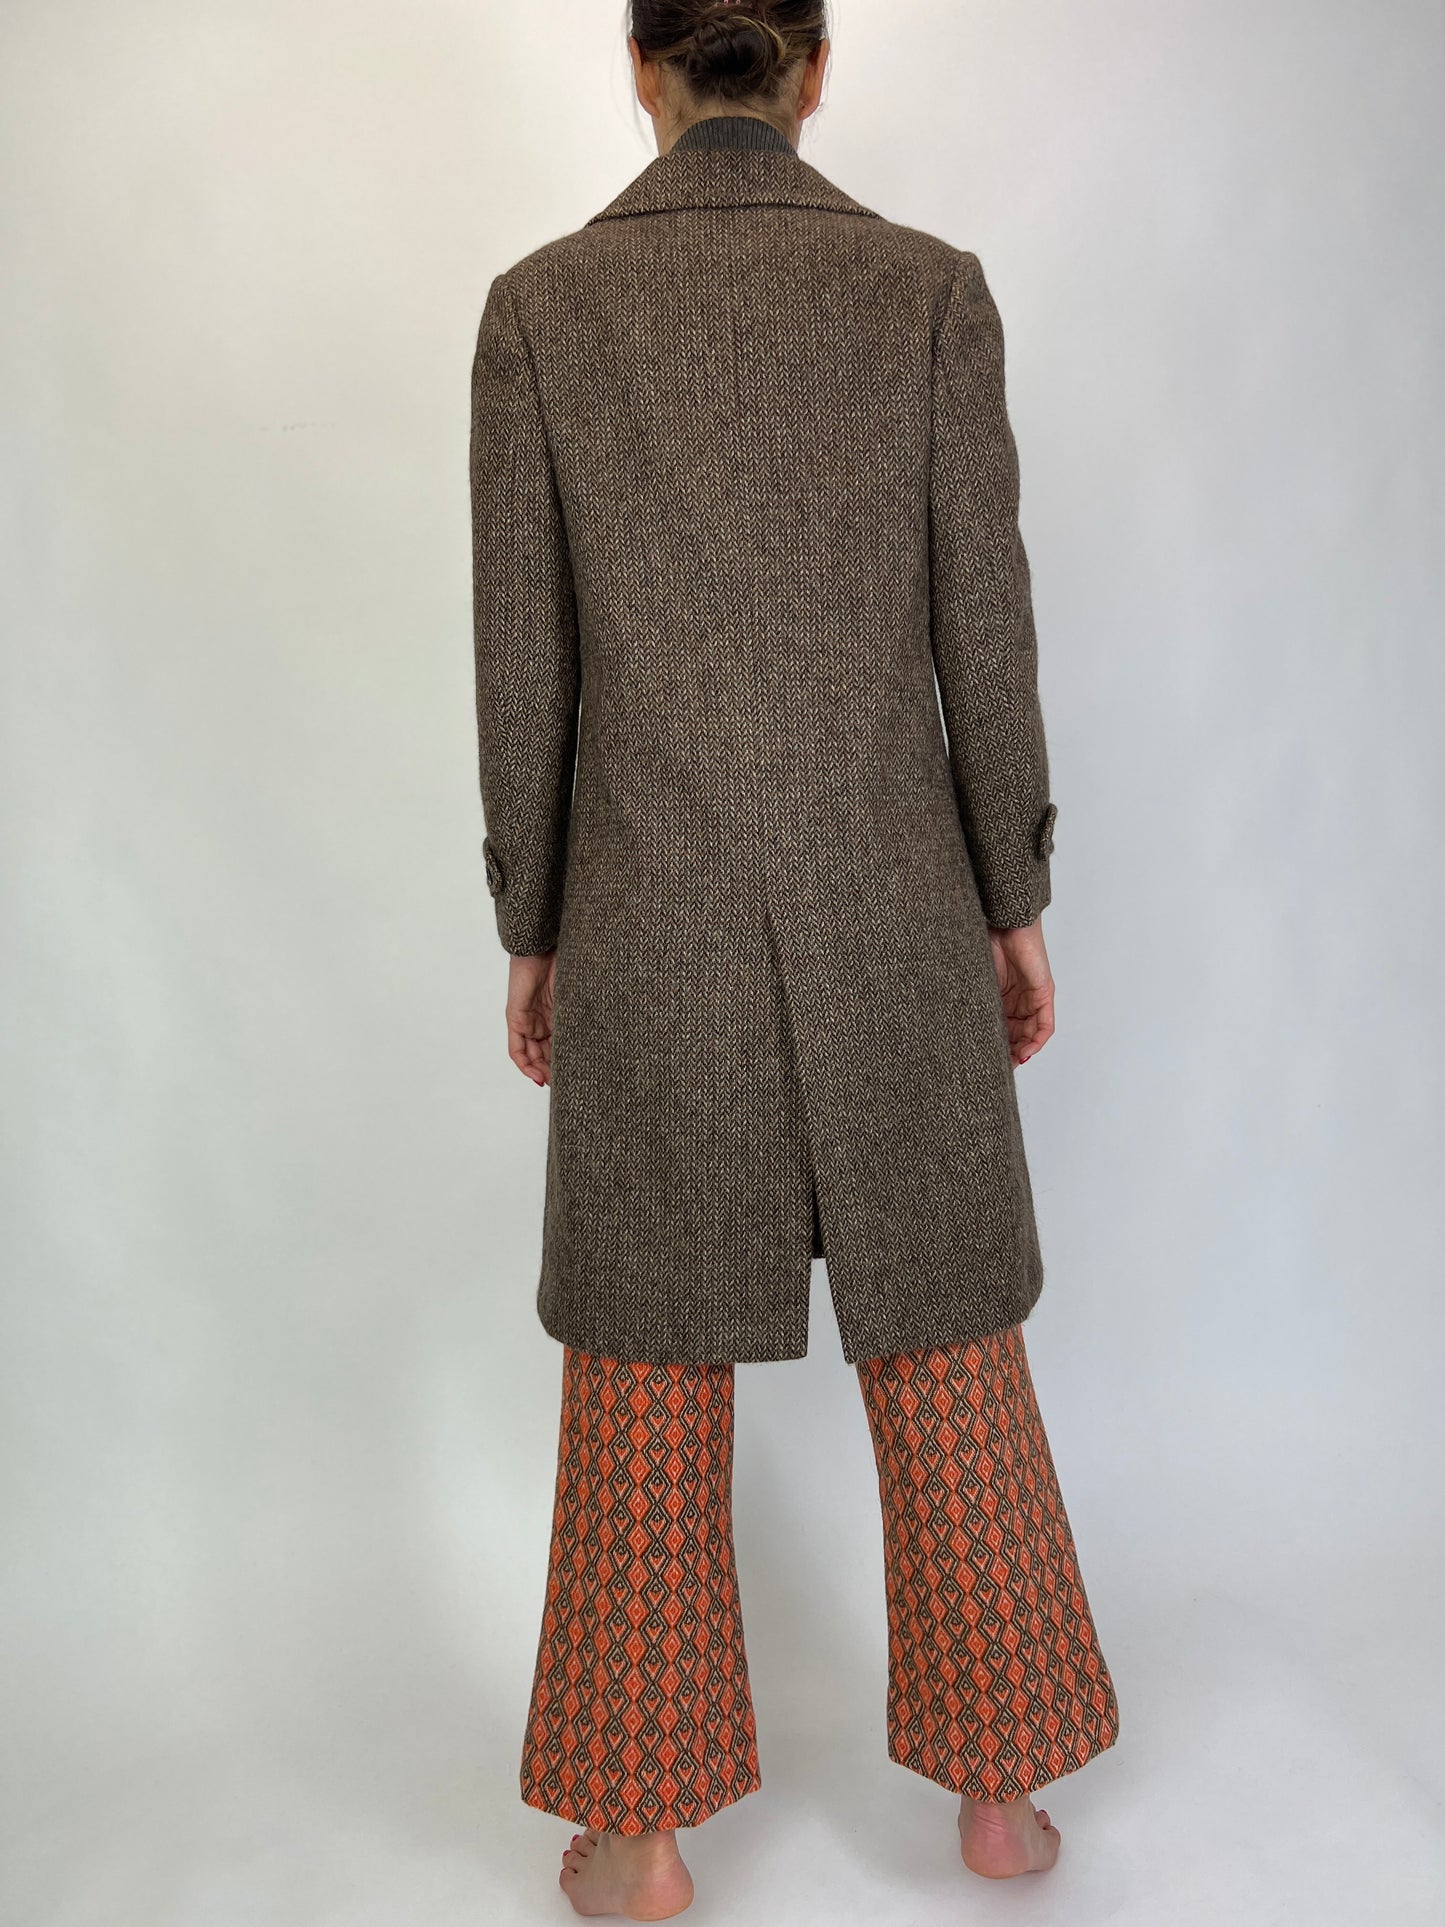 Palton vintage grej cu ivoire lana plină texturată